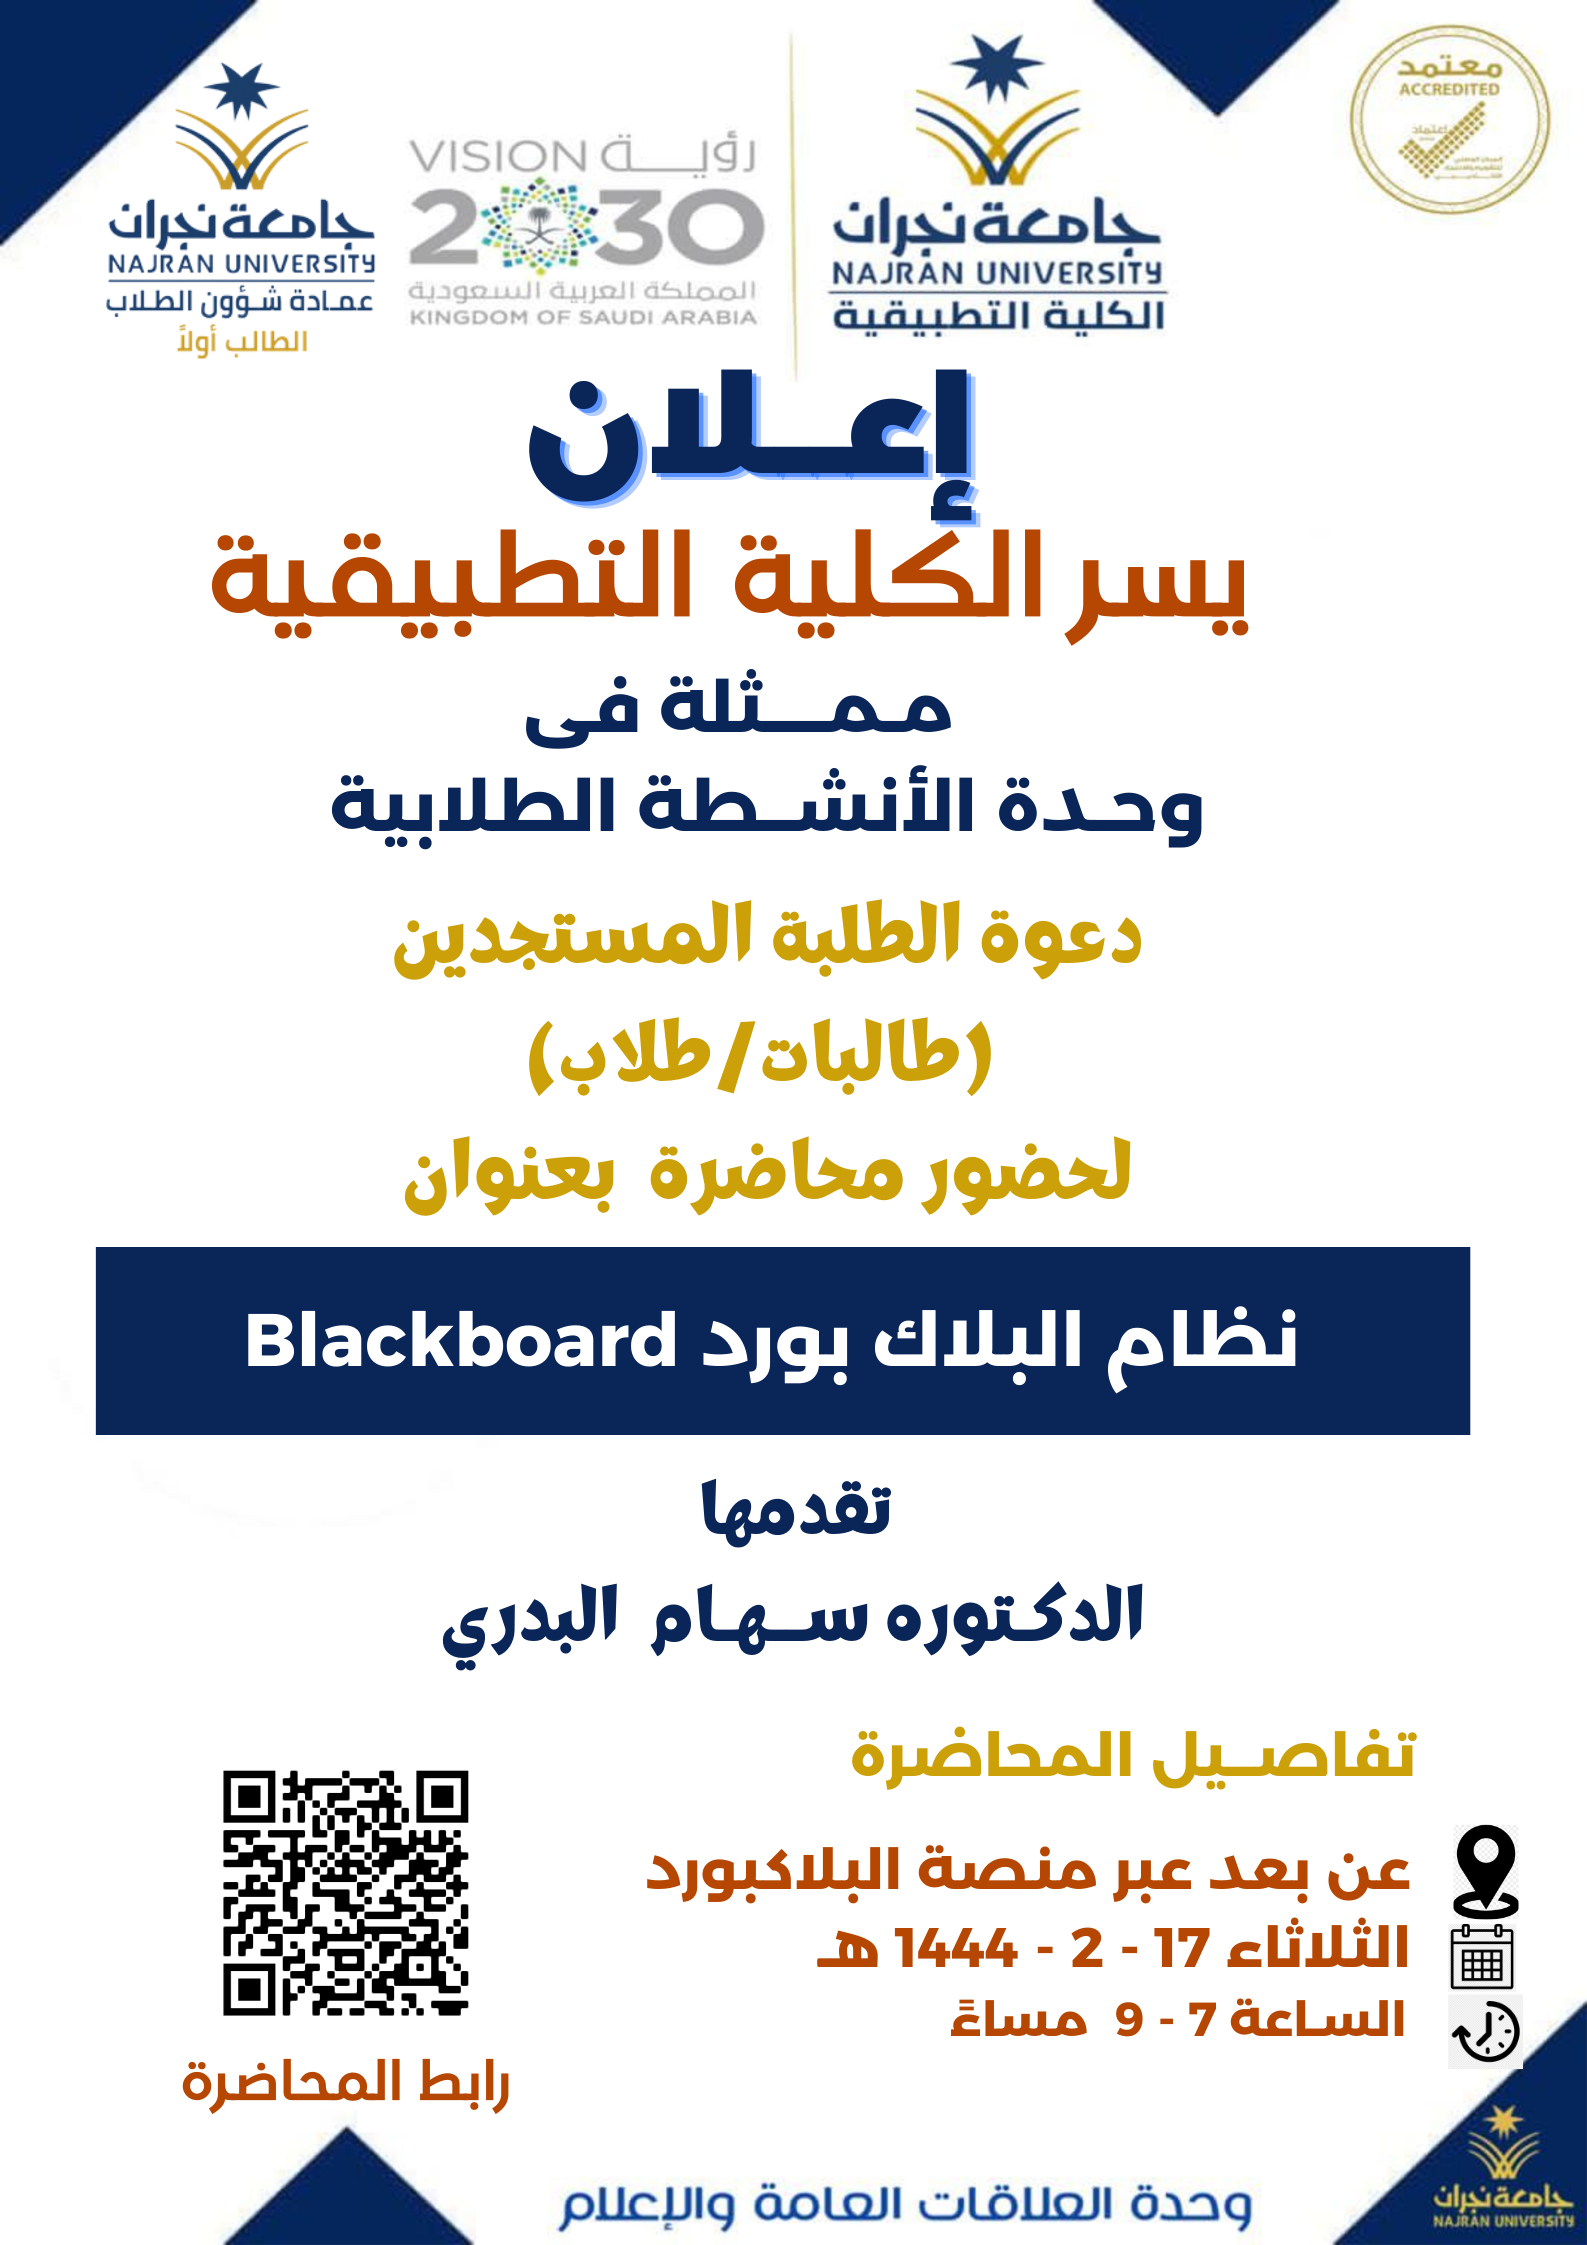 وحدة الانشطة الطلابية تعلن عن إقامة محاضرة بعنوان 'نظام البلاك بورد Blackboard ' - الفصل الأول 1444